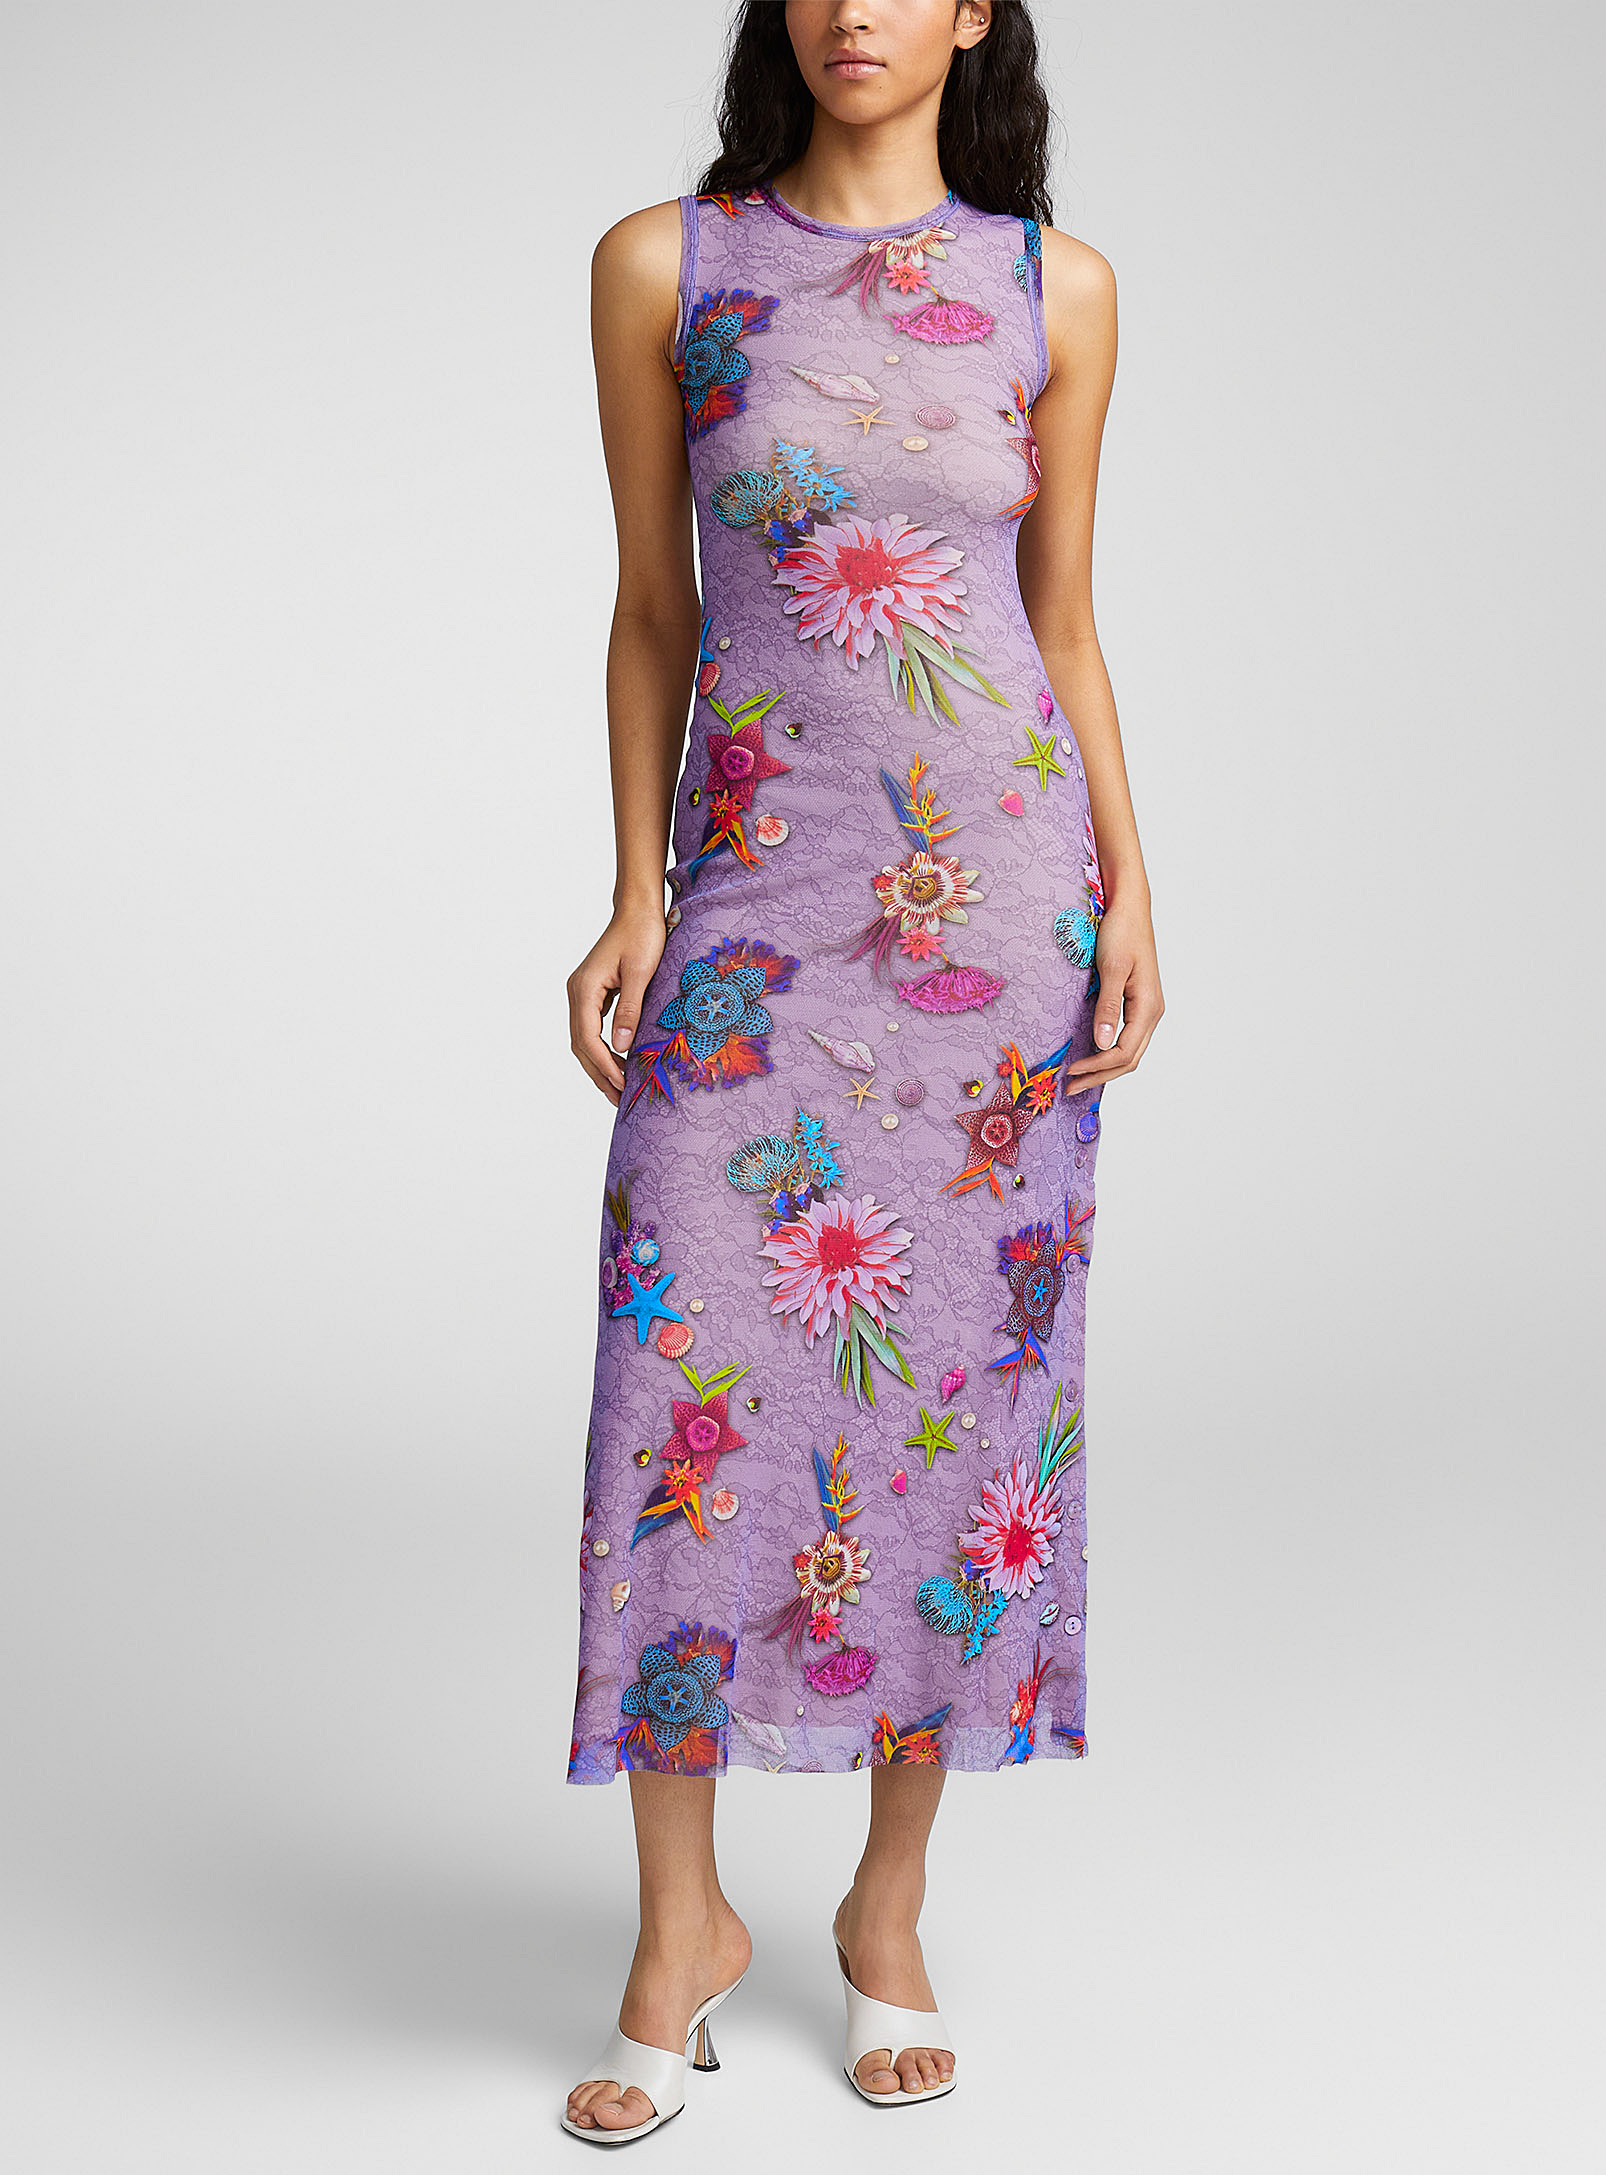 FUZZI - La robe en tulle flore colorée